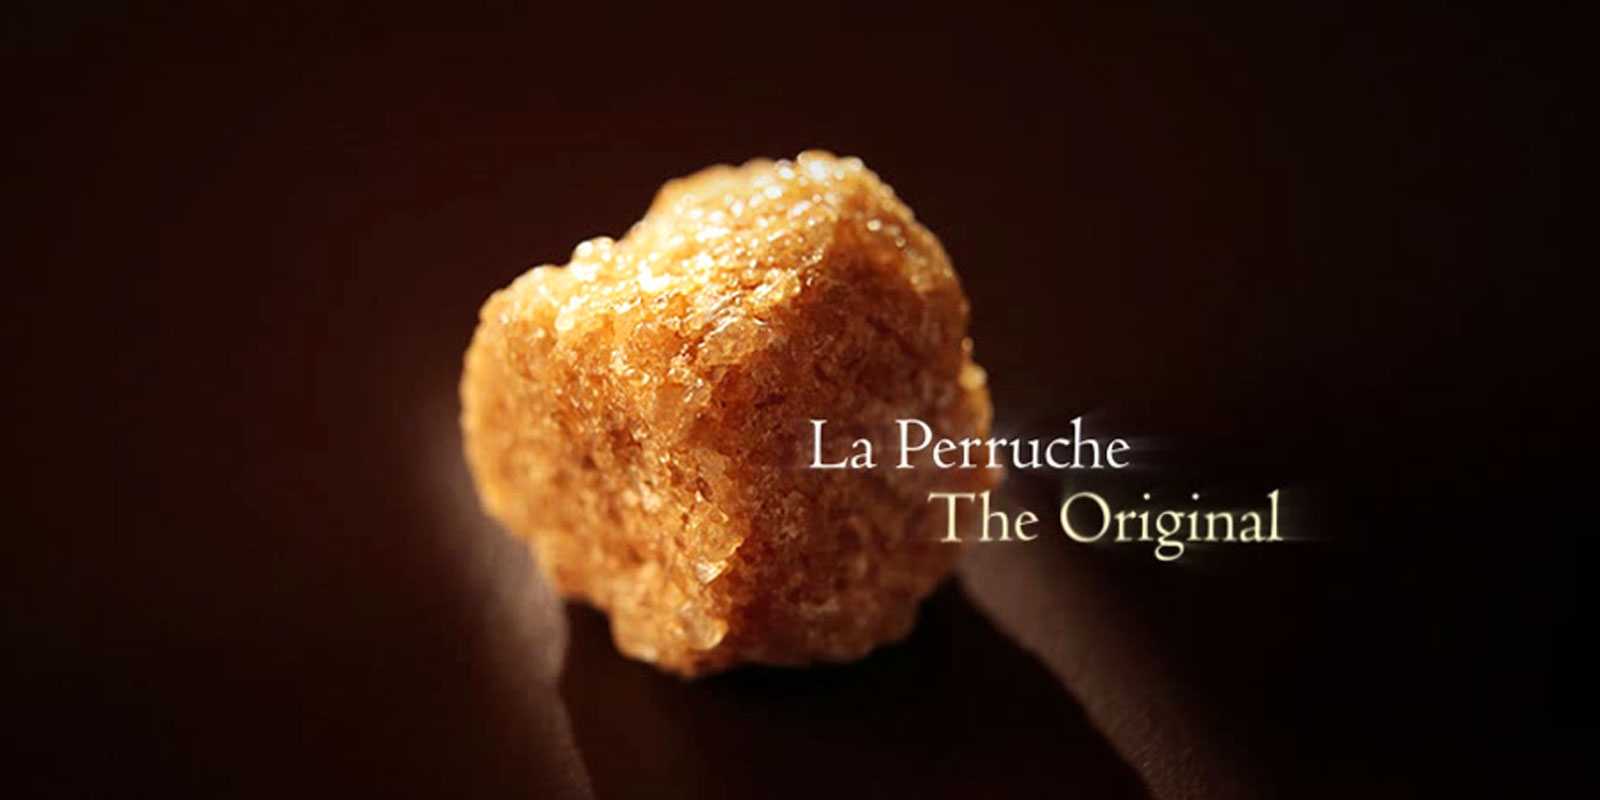 La Perruche - rietsuiker La Perruche is een uitzonderlijk product, met een bijzondere smaak, behaagde waarderen al die mooie en verfijnde smaak. Heel eenvoudig, tovert hij louter plezier in uw zintuigen. La Perruche er op onregelmatige Casson in wit of goudbruin. Nog verder bekend als Cassonade kristalvorm in de strooier.